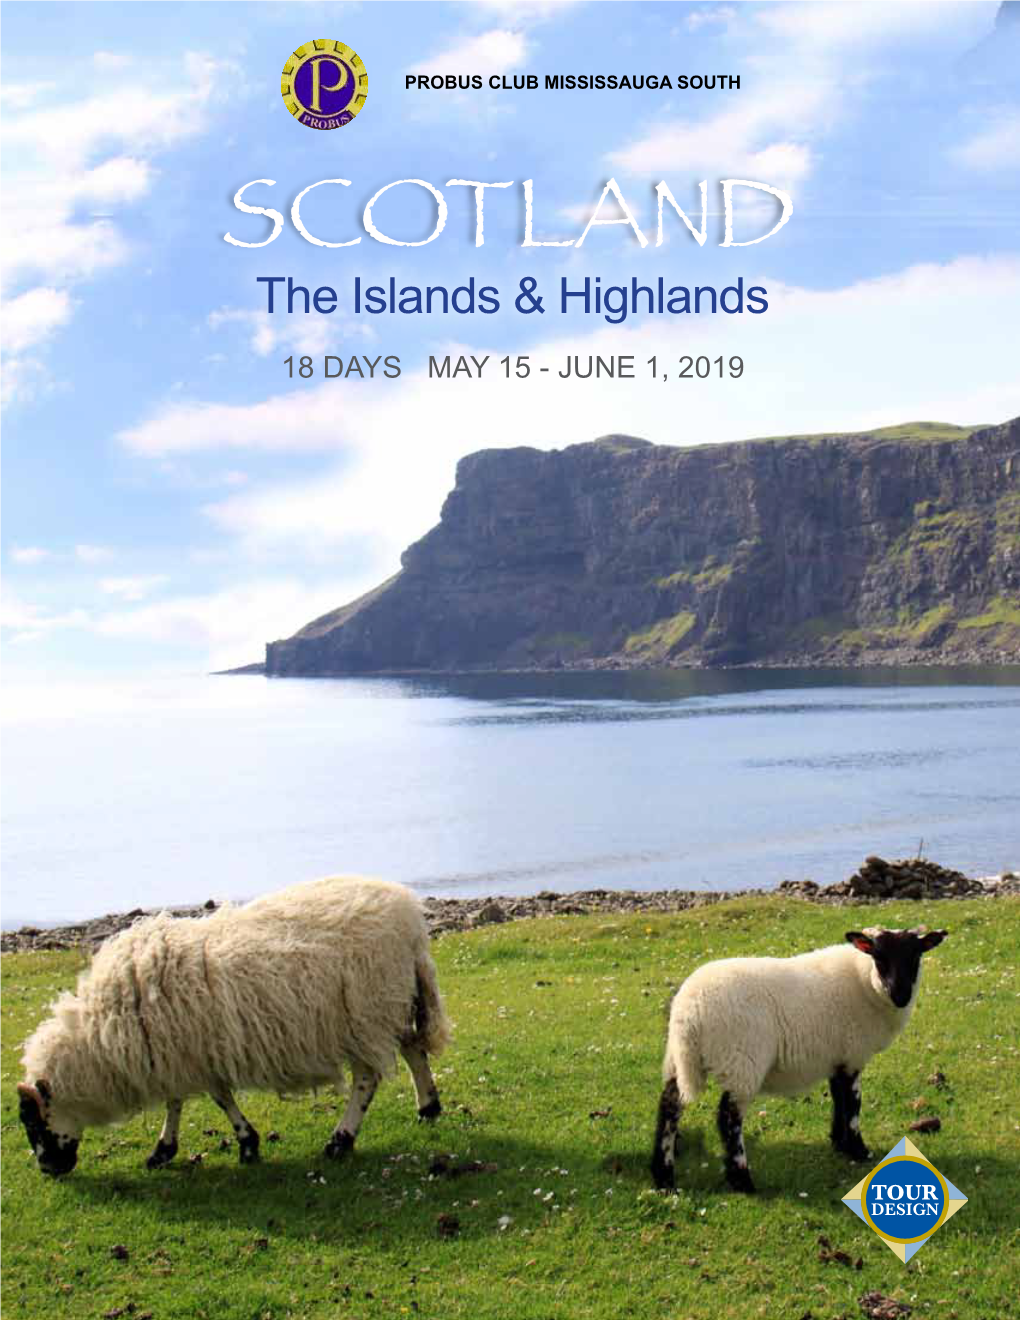 Scotlandthe Islands & Highlands 18 DAYS MAY 15 - JUNE 1, 2019